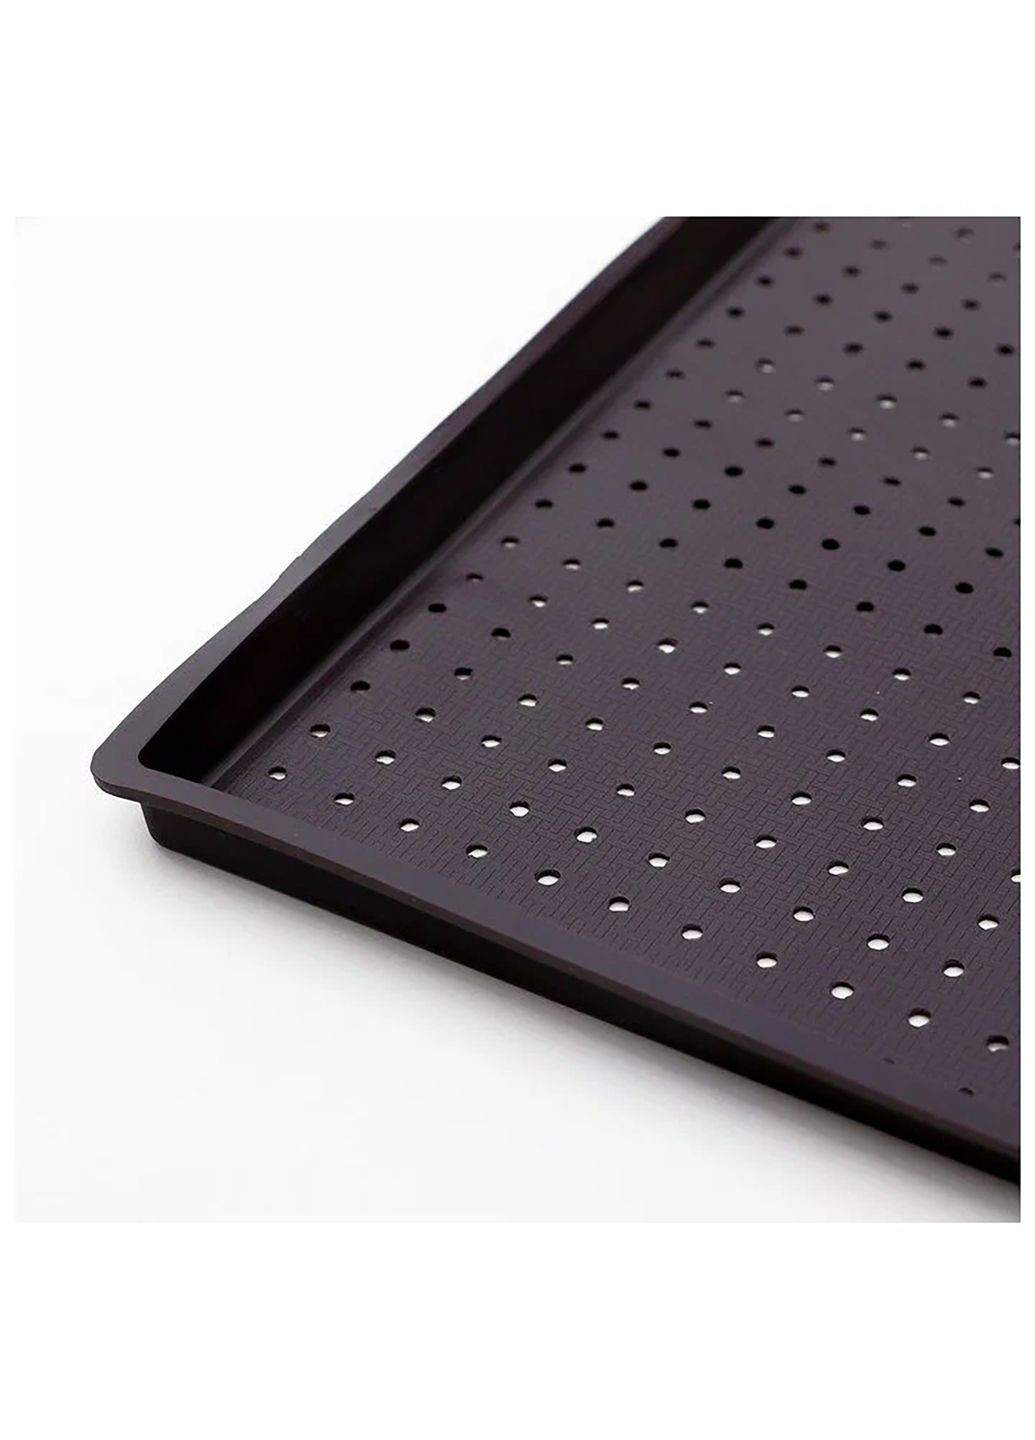 Коврик противень силиконовый для запекания перфорированный прямоугольный многоразовый антипригарный 39х30х1 см Kitchen Master (285792064)